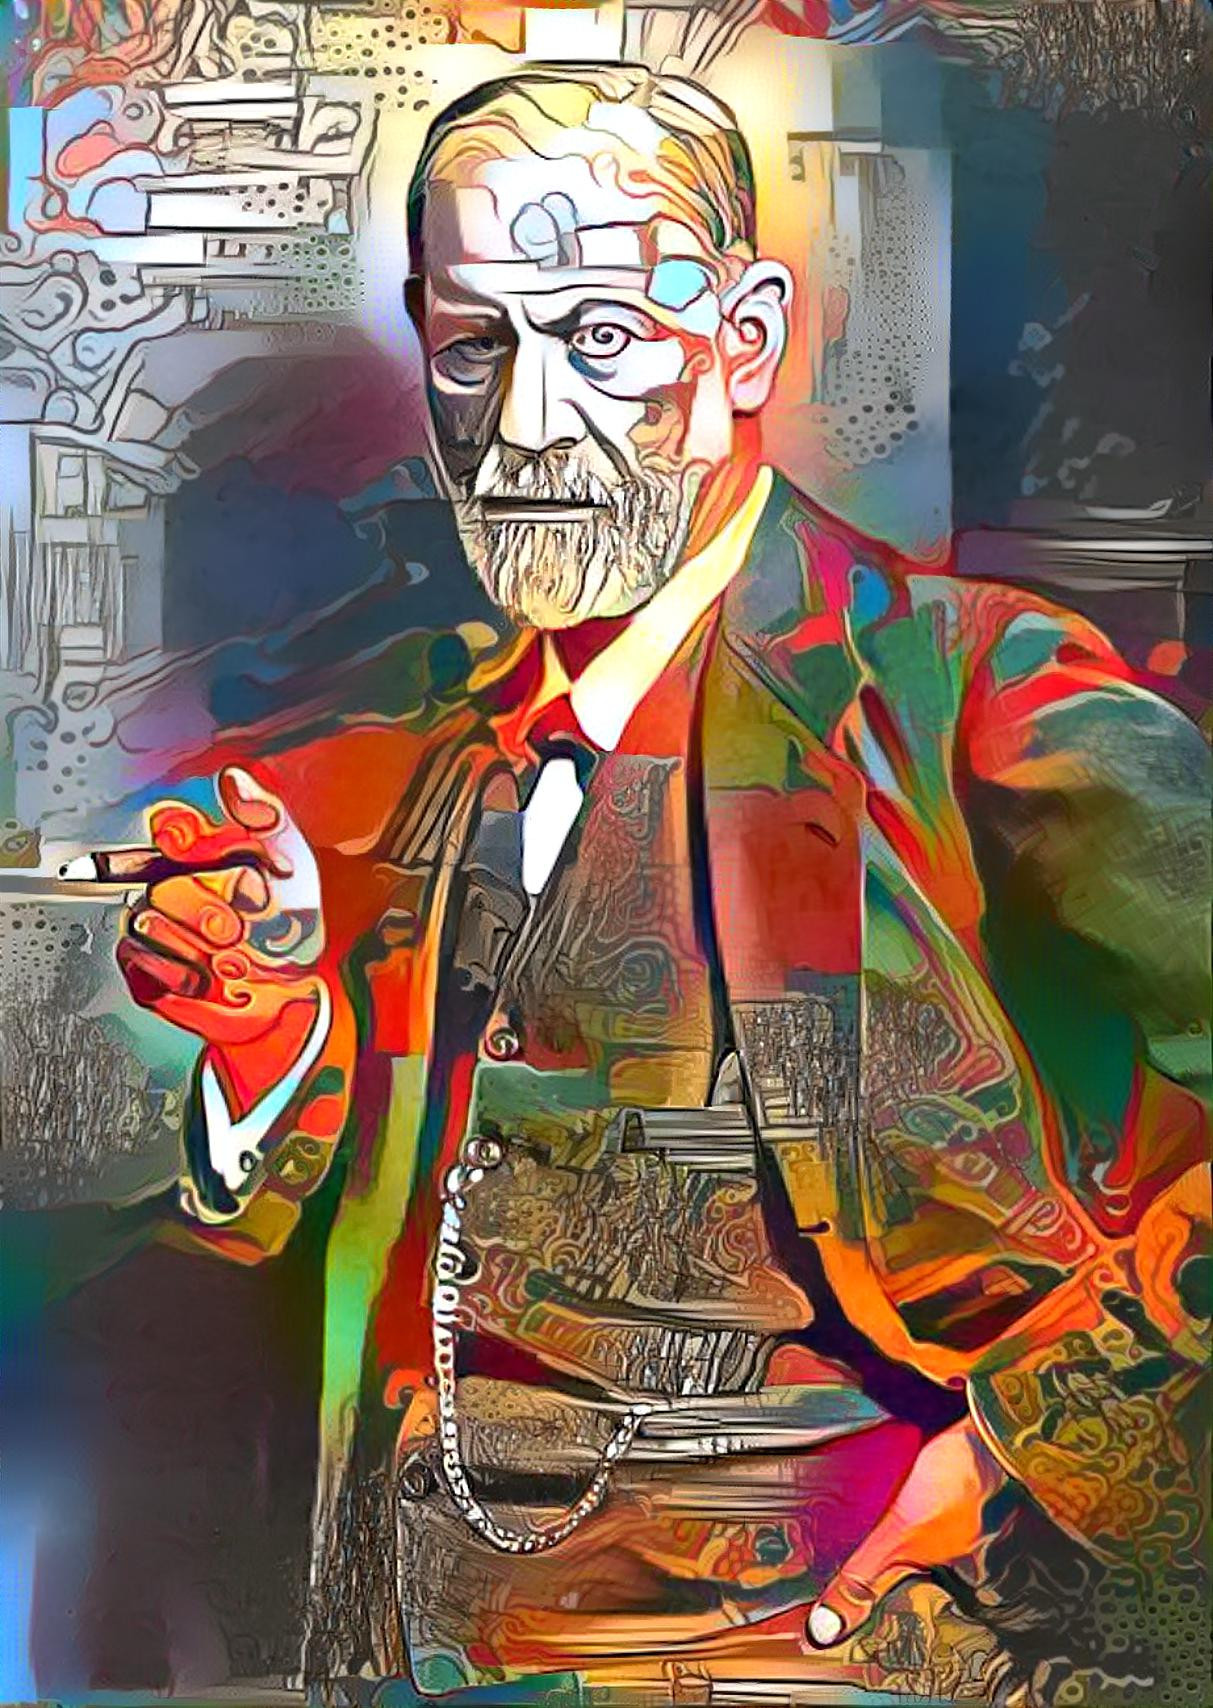 Siegmund Freud